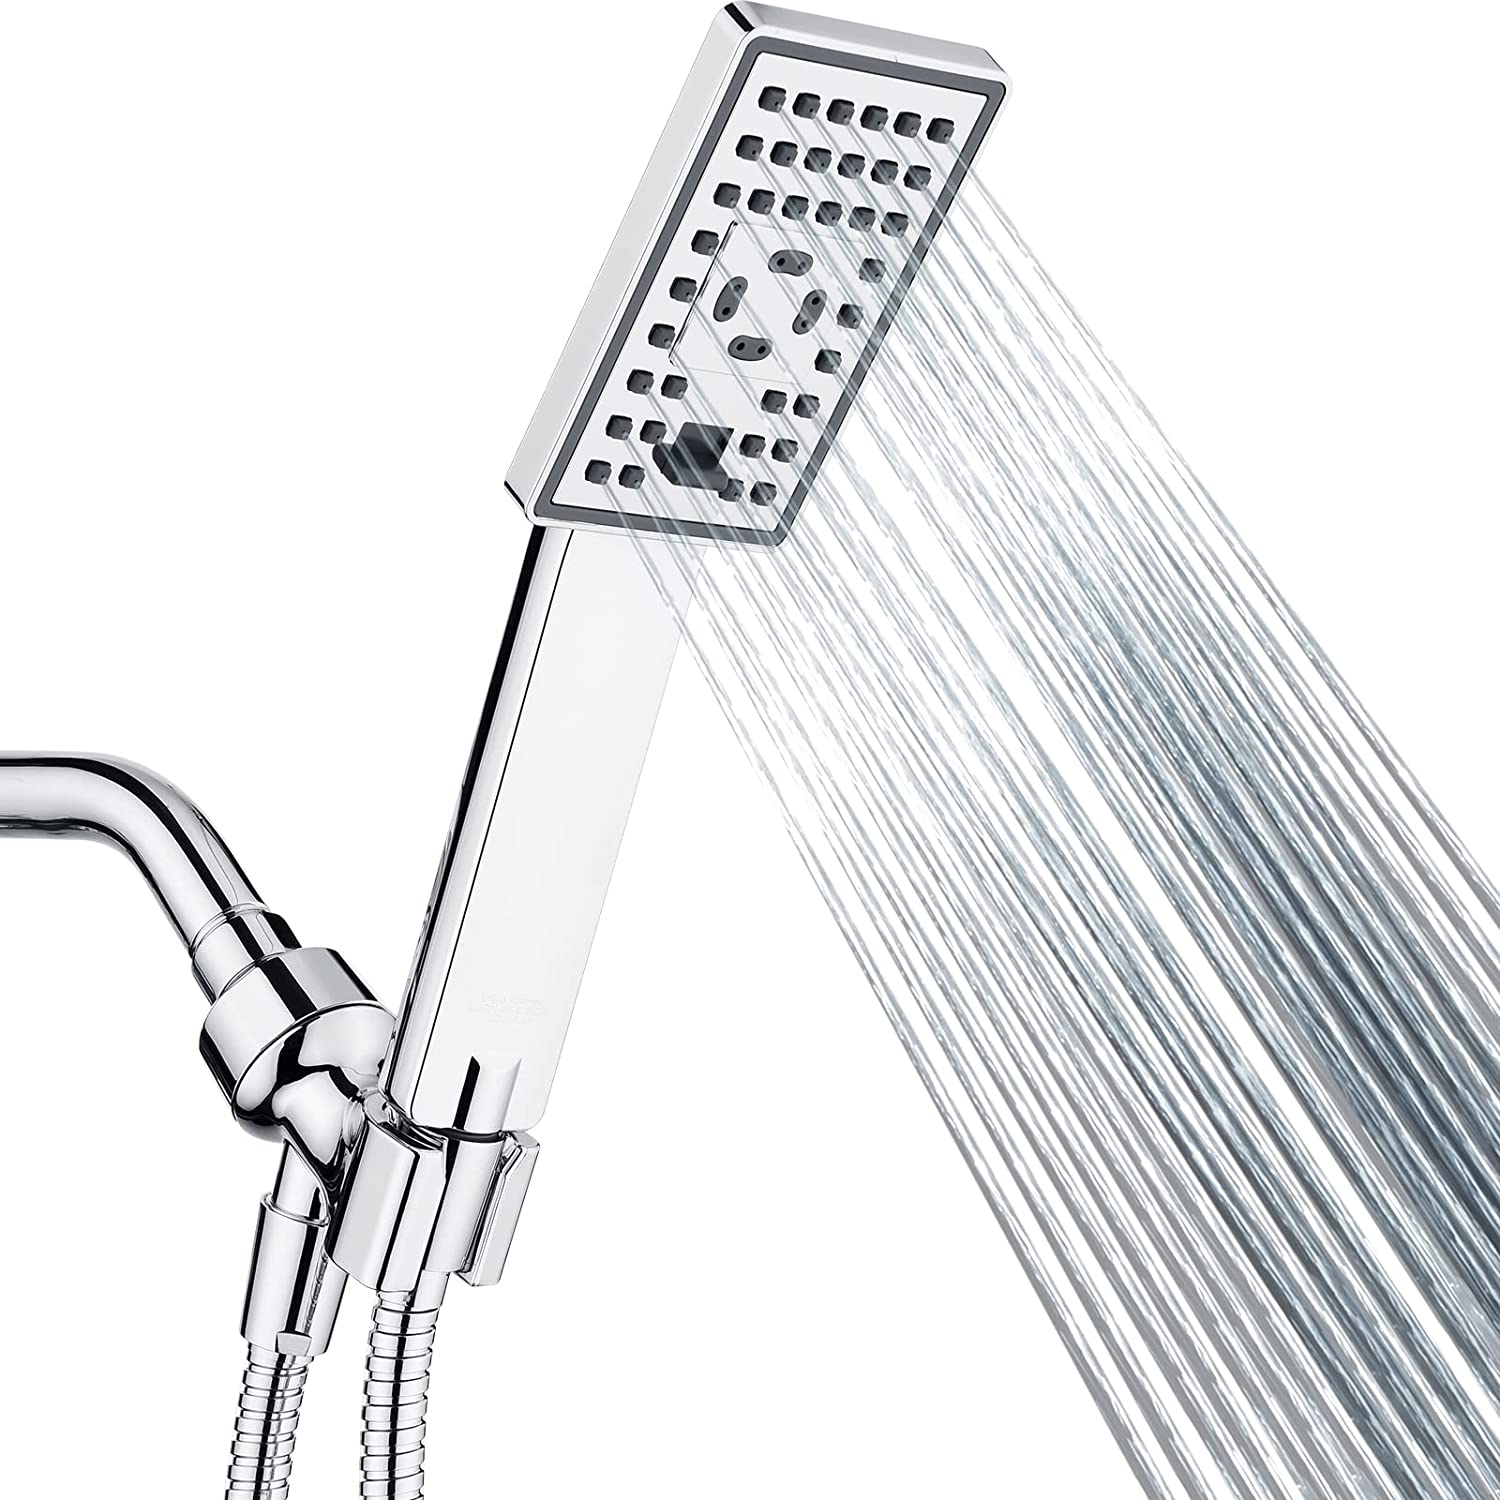 Adjustable Shower Arm Mount for Hand Shower